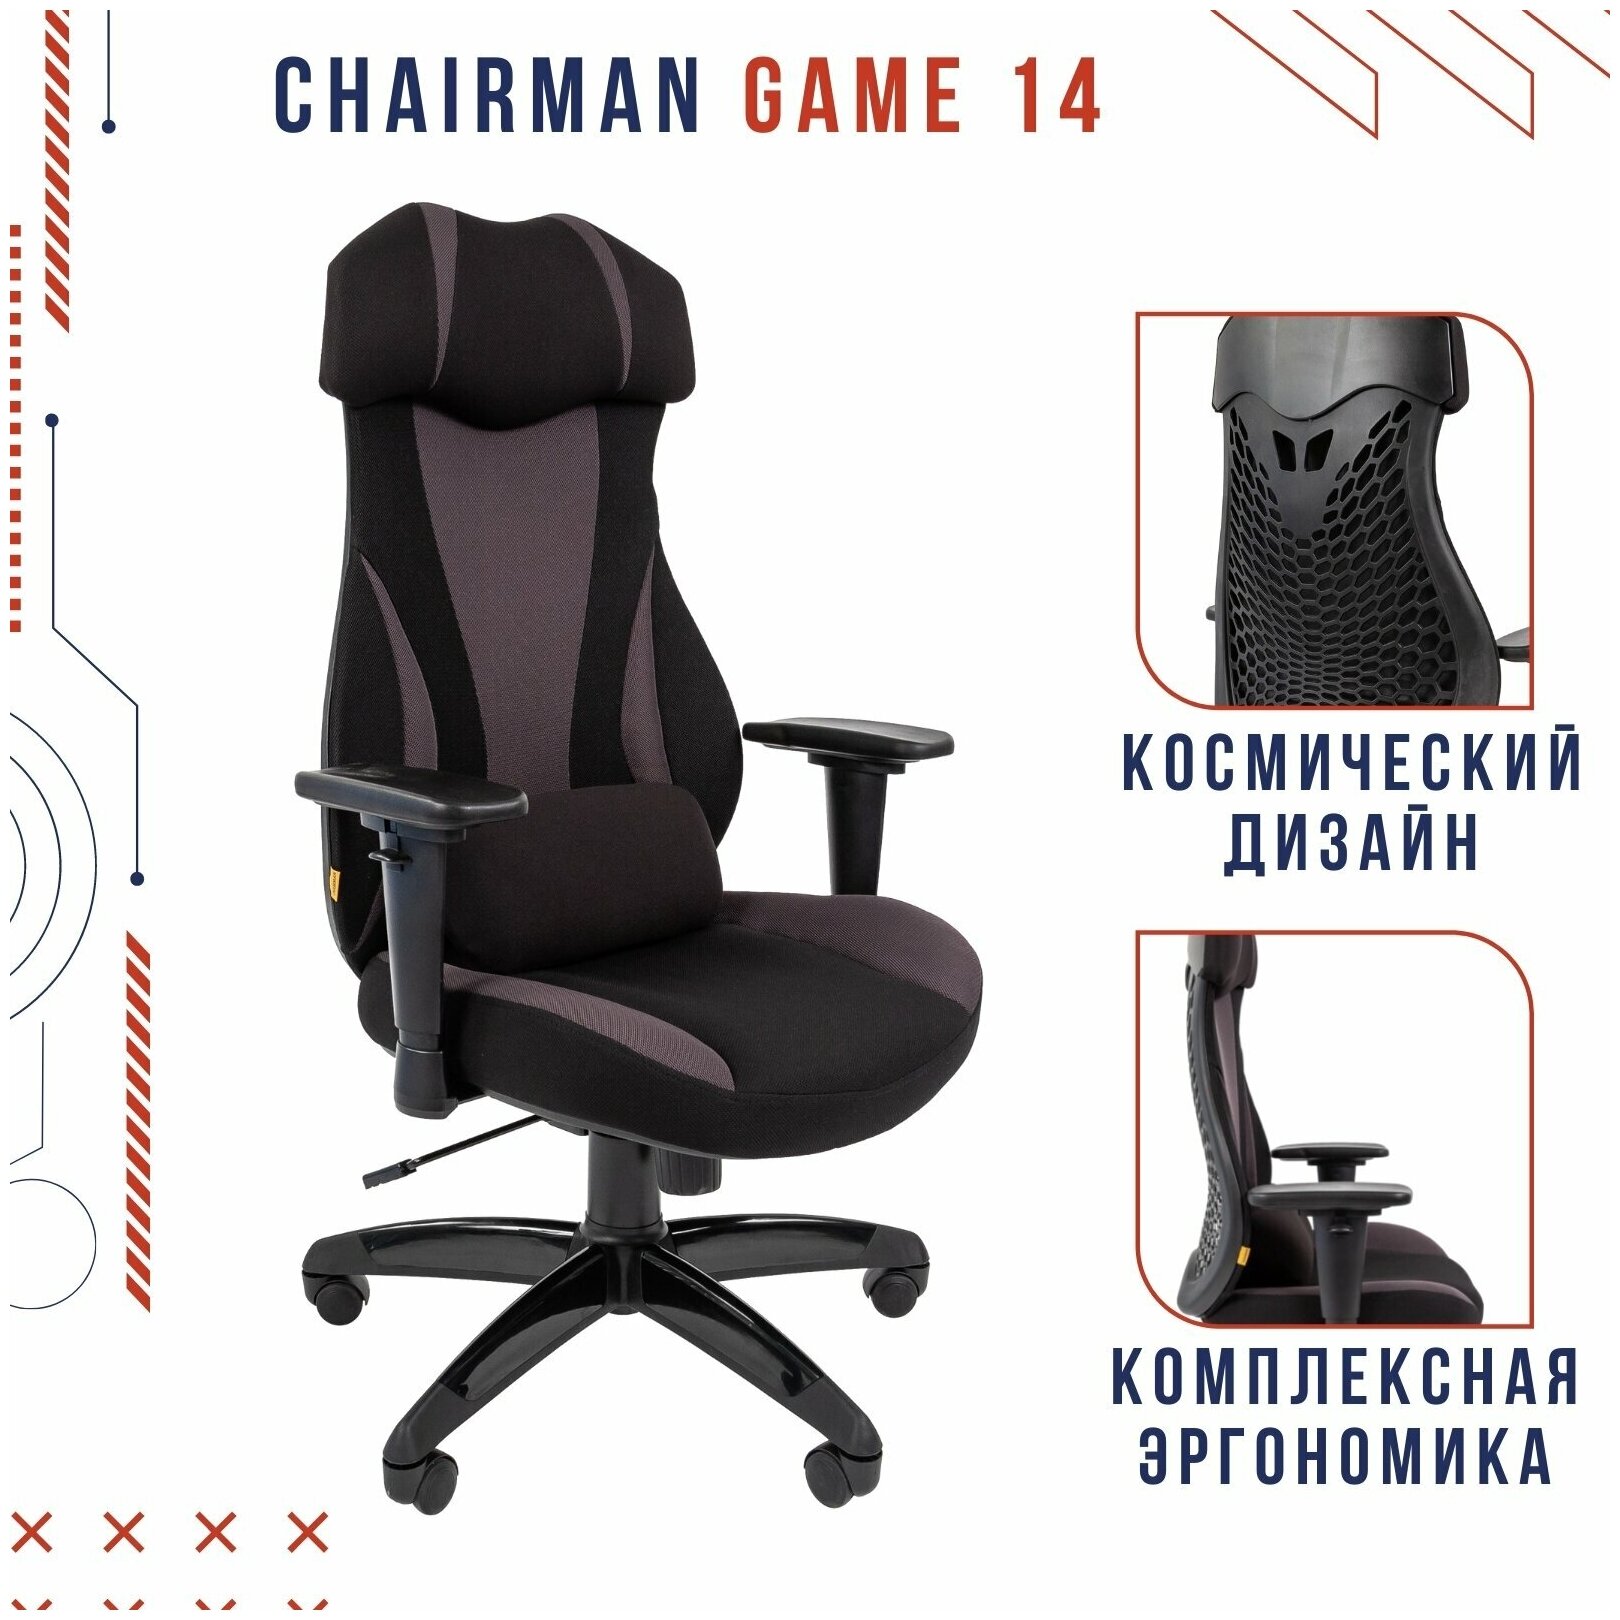 Игровое компьютерное кресло CHAIRMAN GAME 14, ткань, черный/серый